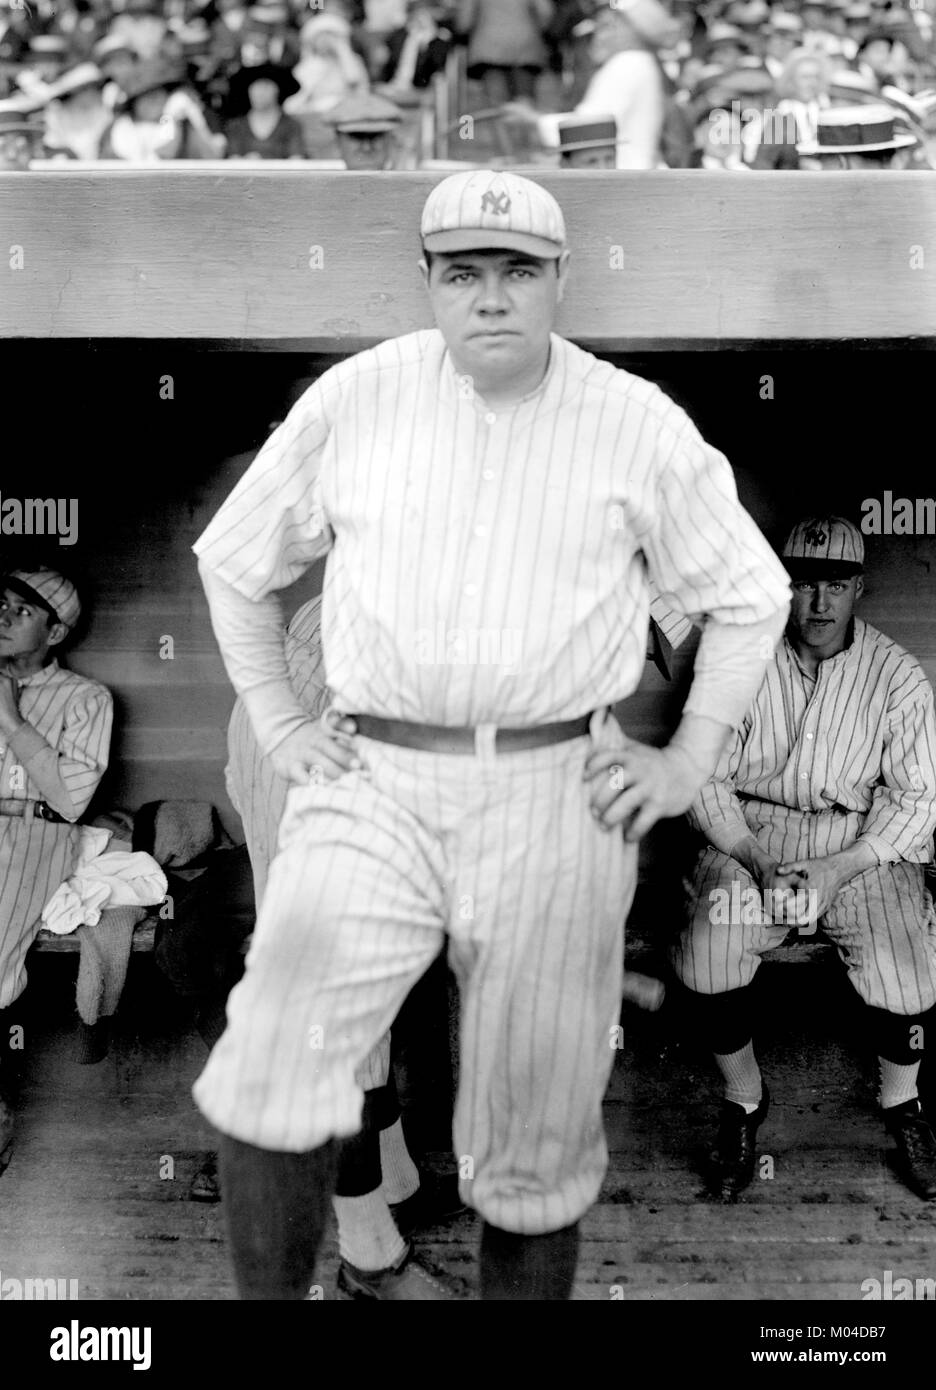 Babe Ruth. El jugador de béisbol estadounidense George Herman "Babe" Ruth Jr. (1895-1948), jugando para los Yankees de Nueva York en junio de 1921. Foto de Bain nuevo servicio. Foto de stock